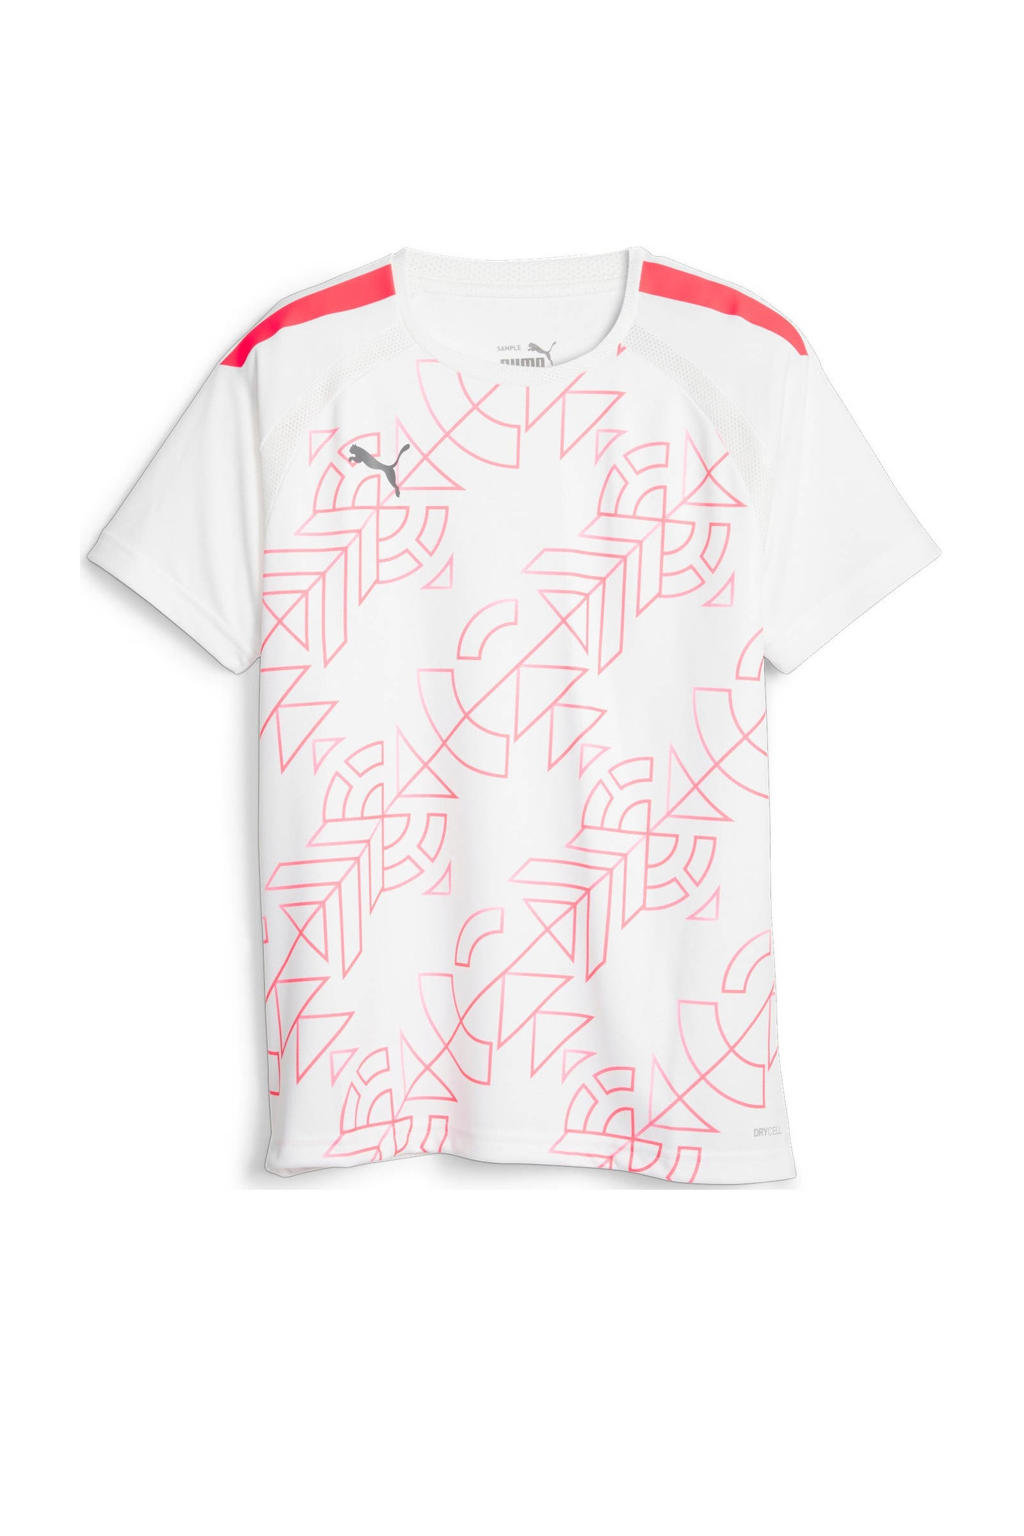 Wit en rode jongens en meisjes Puma Junior voetbalshirt van polyester met printopdruk, korte mouwen en ronde hals